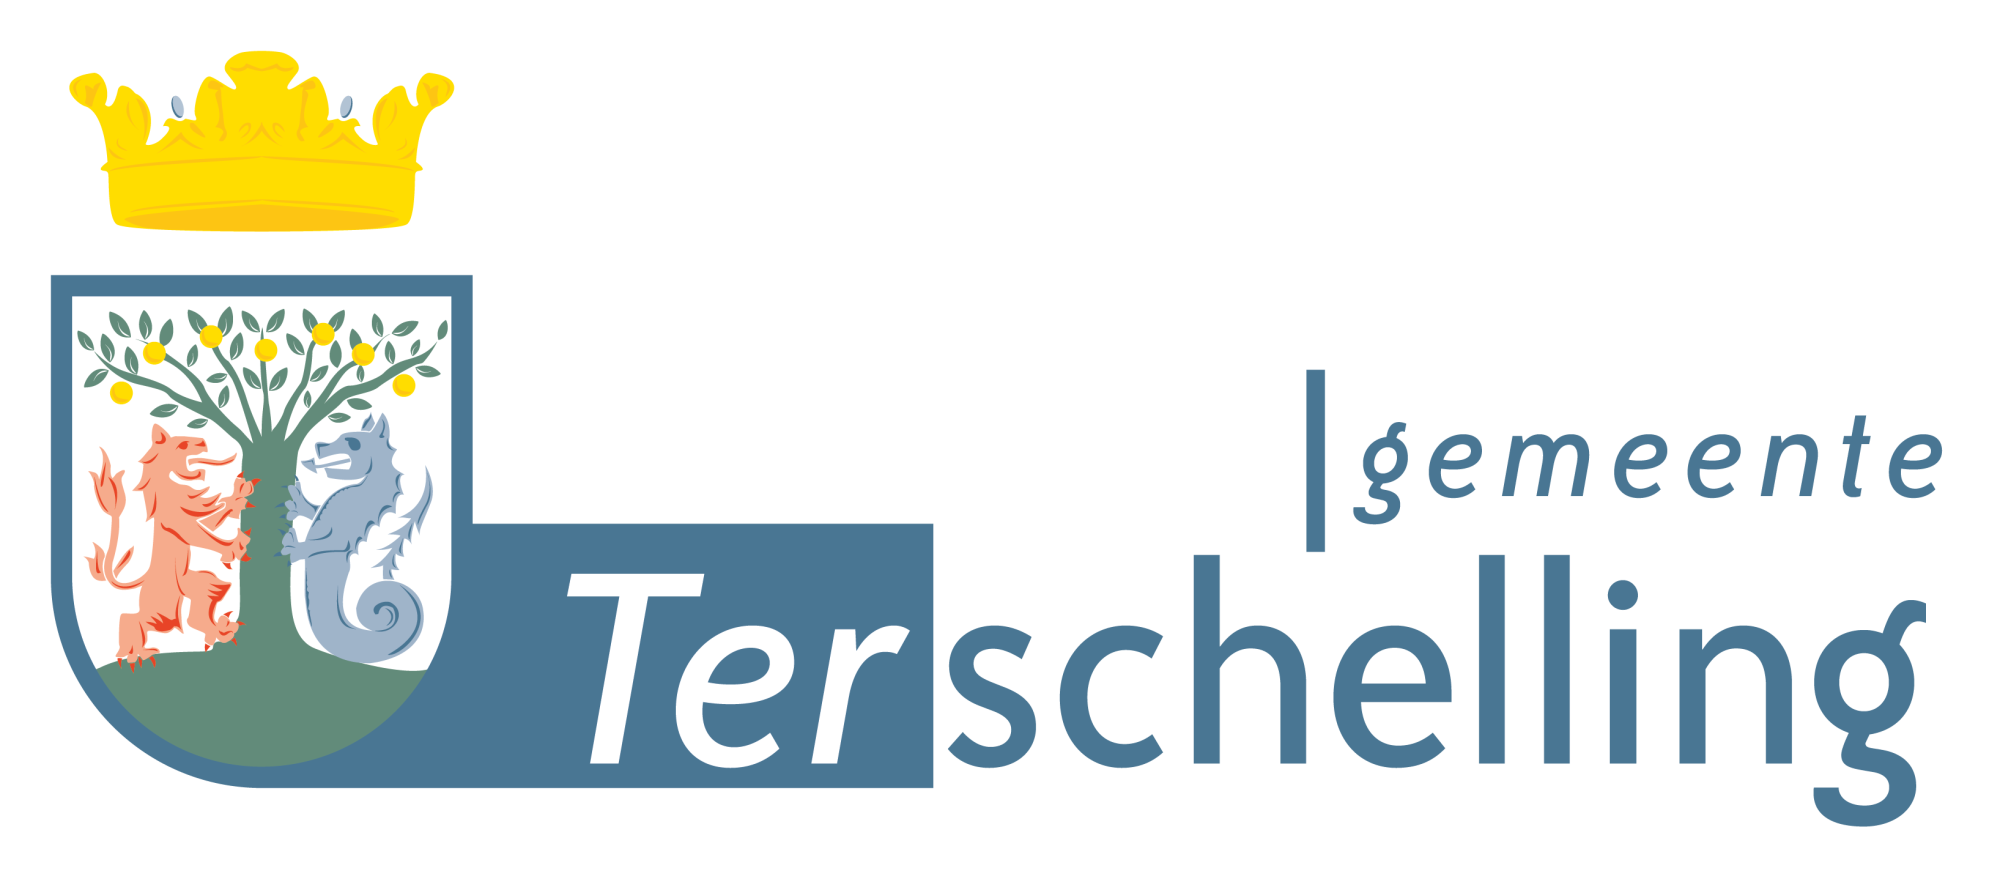 Gemeente-Terschelling_Logo_Full-color.png